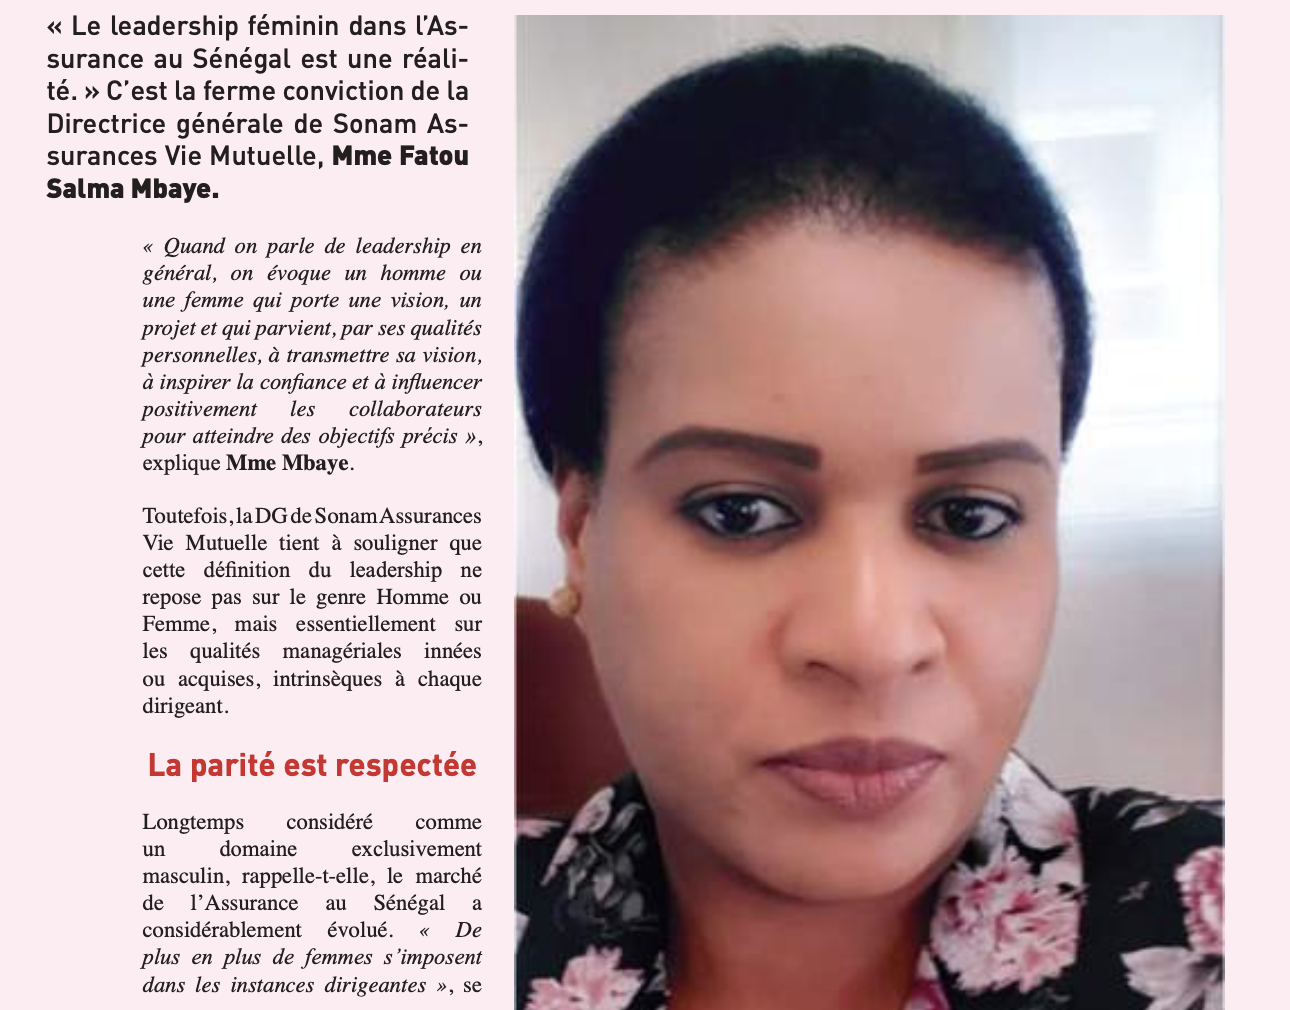 Fatou Salma Mbaye, DG Sonam Assurances Vie Mutuelle « Assurance au Sénégal, le leadership féminin est une réalité »